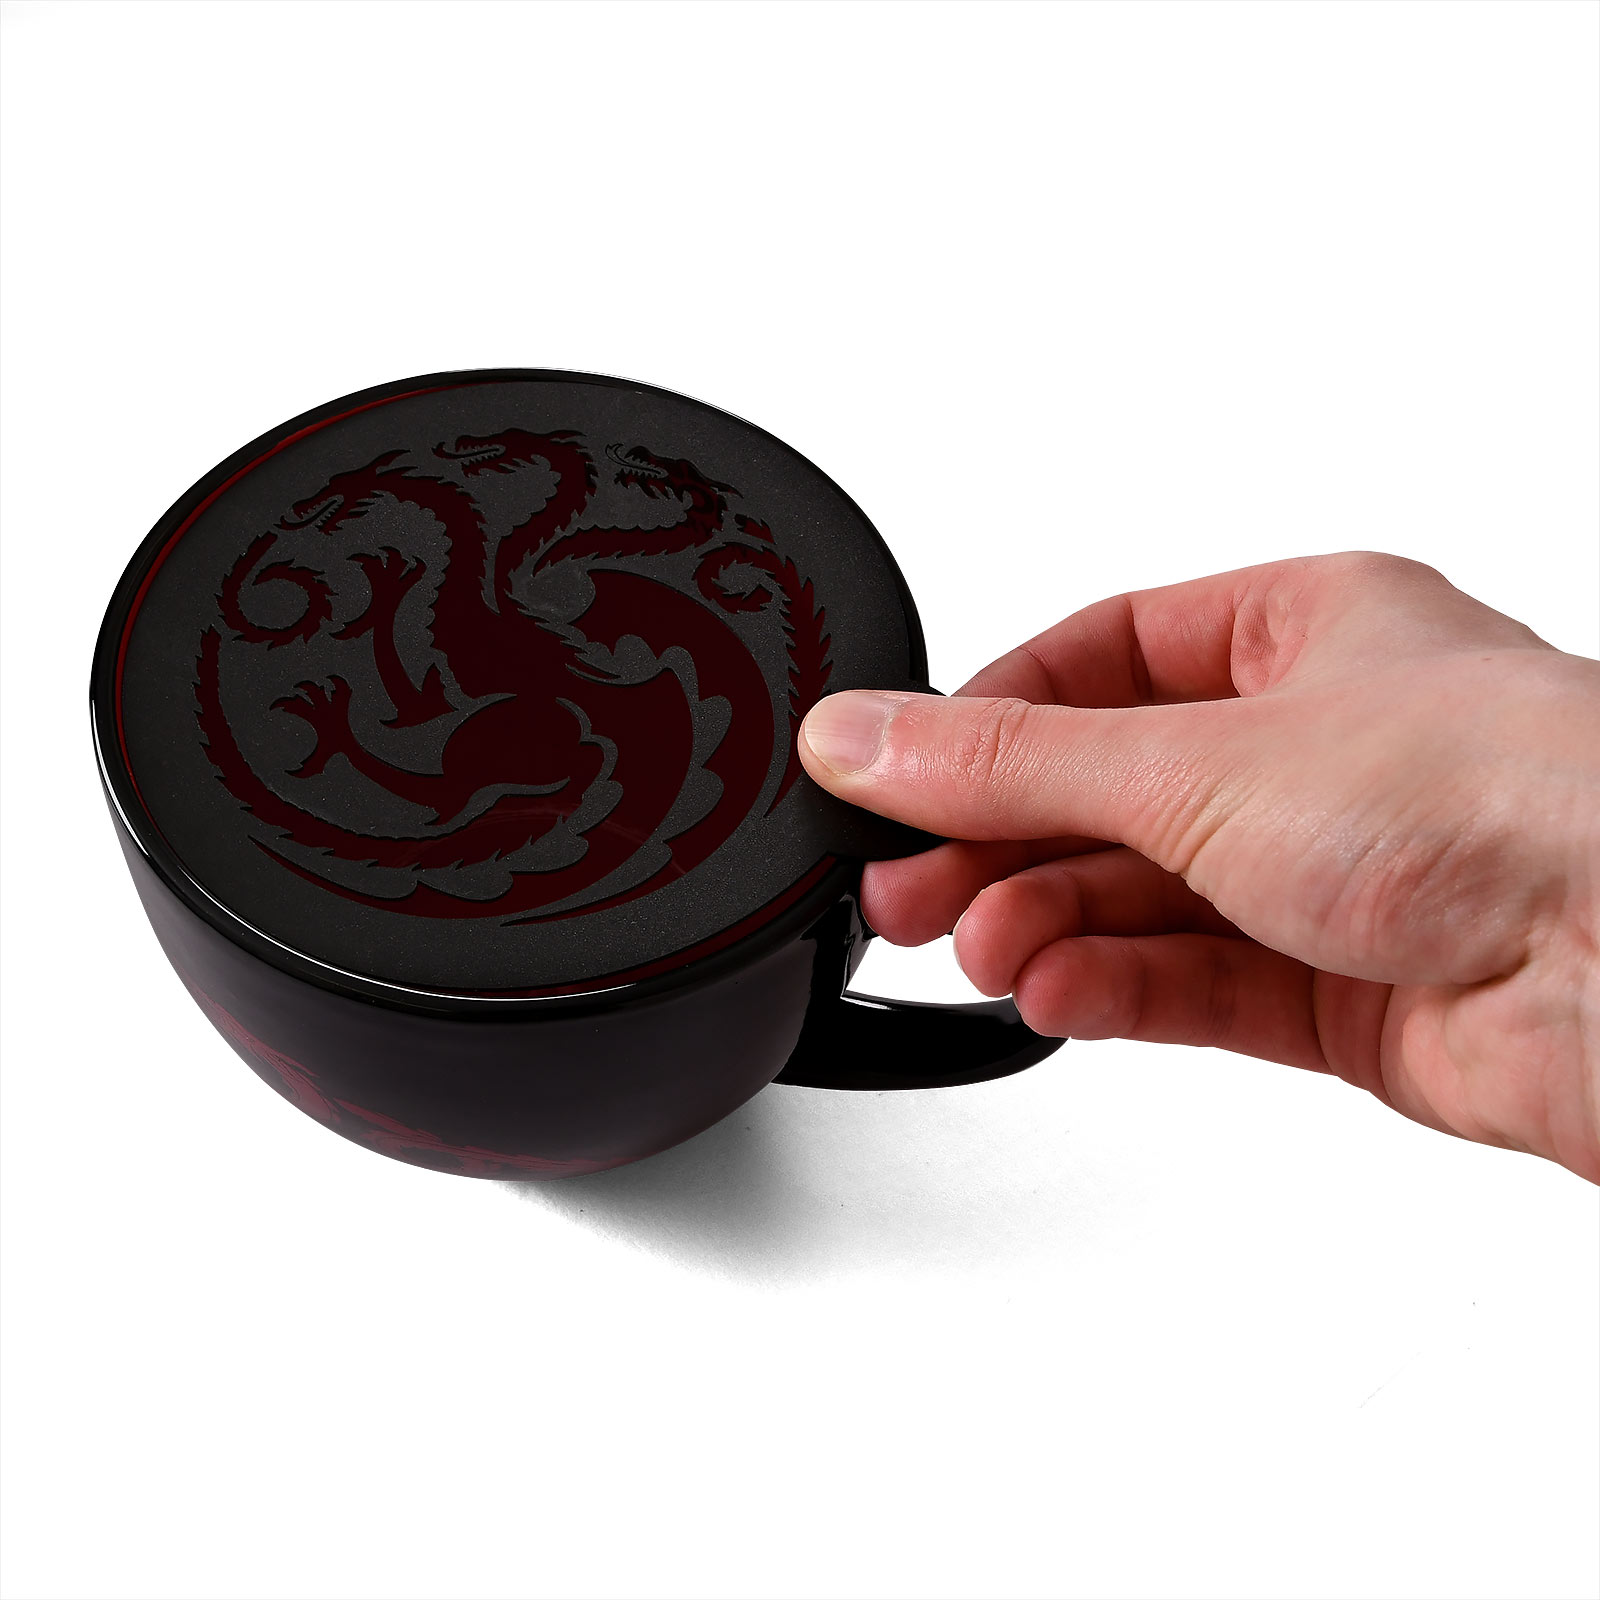 Game of Thrones - House Targaryen Tasse mit Schablone